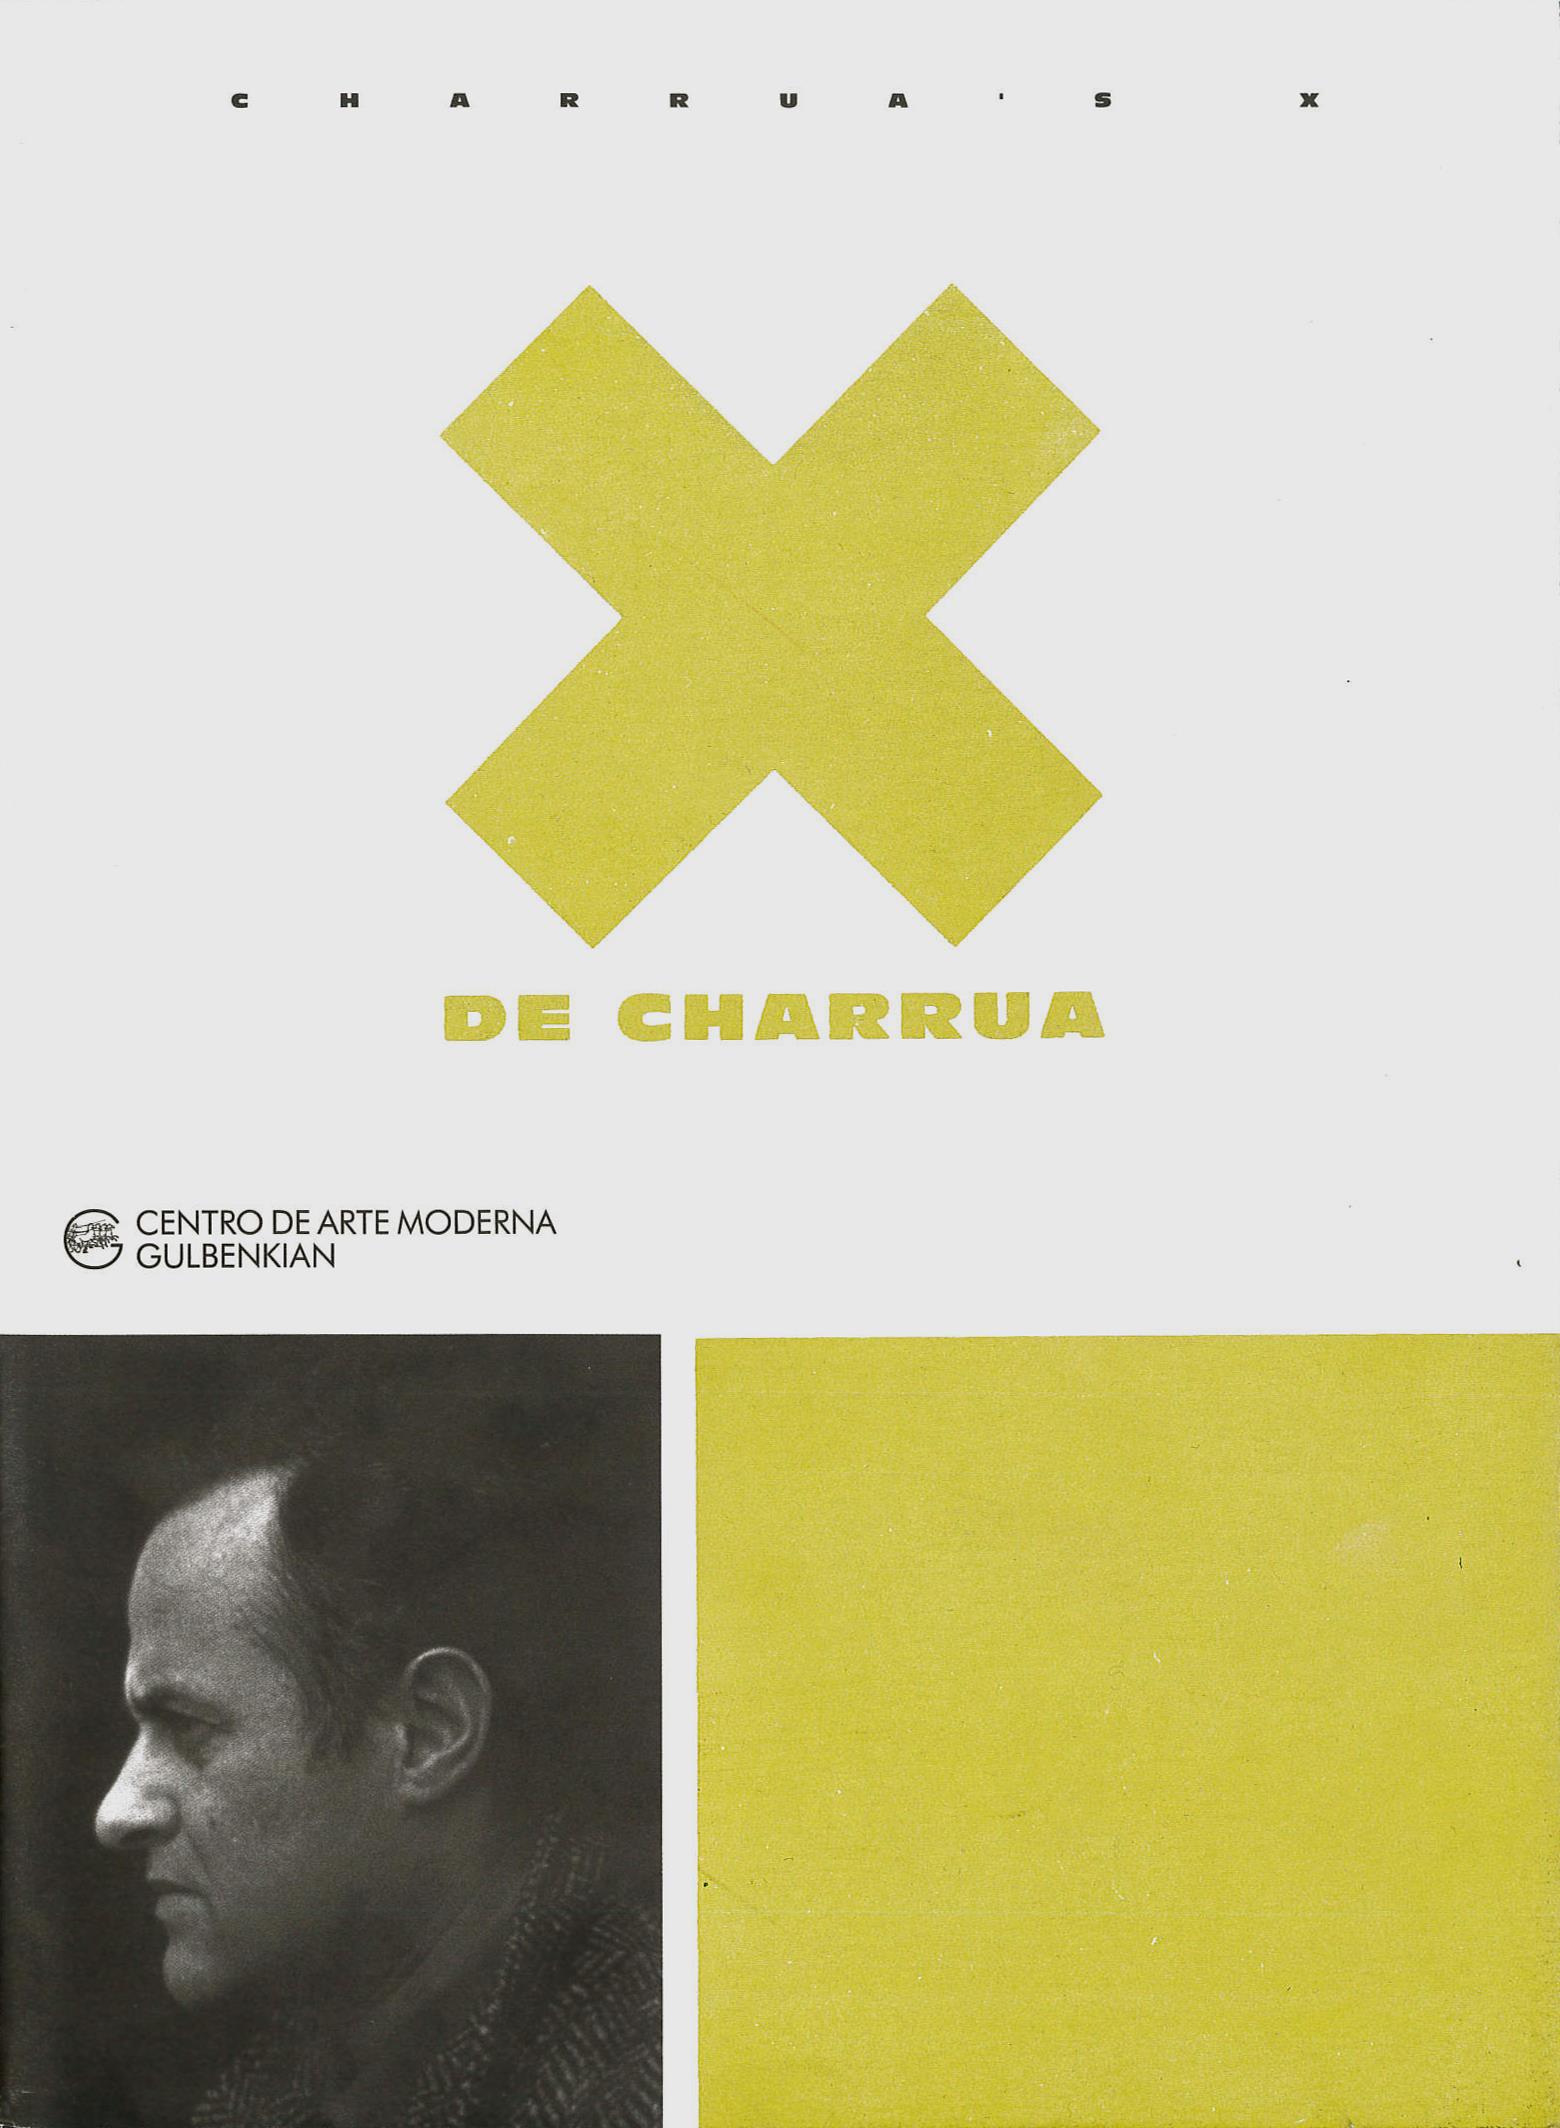 X de Charrua